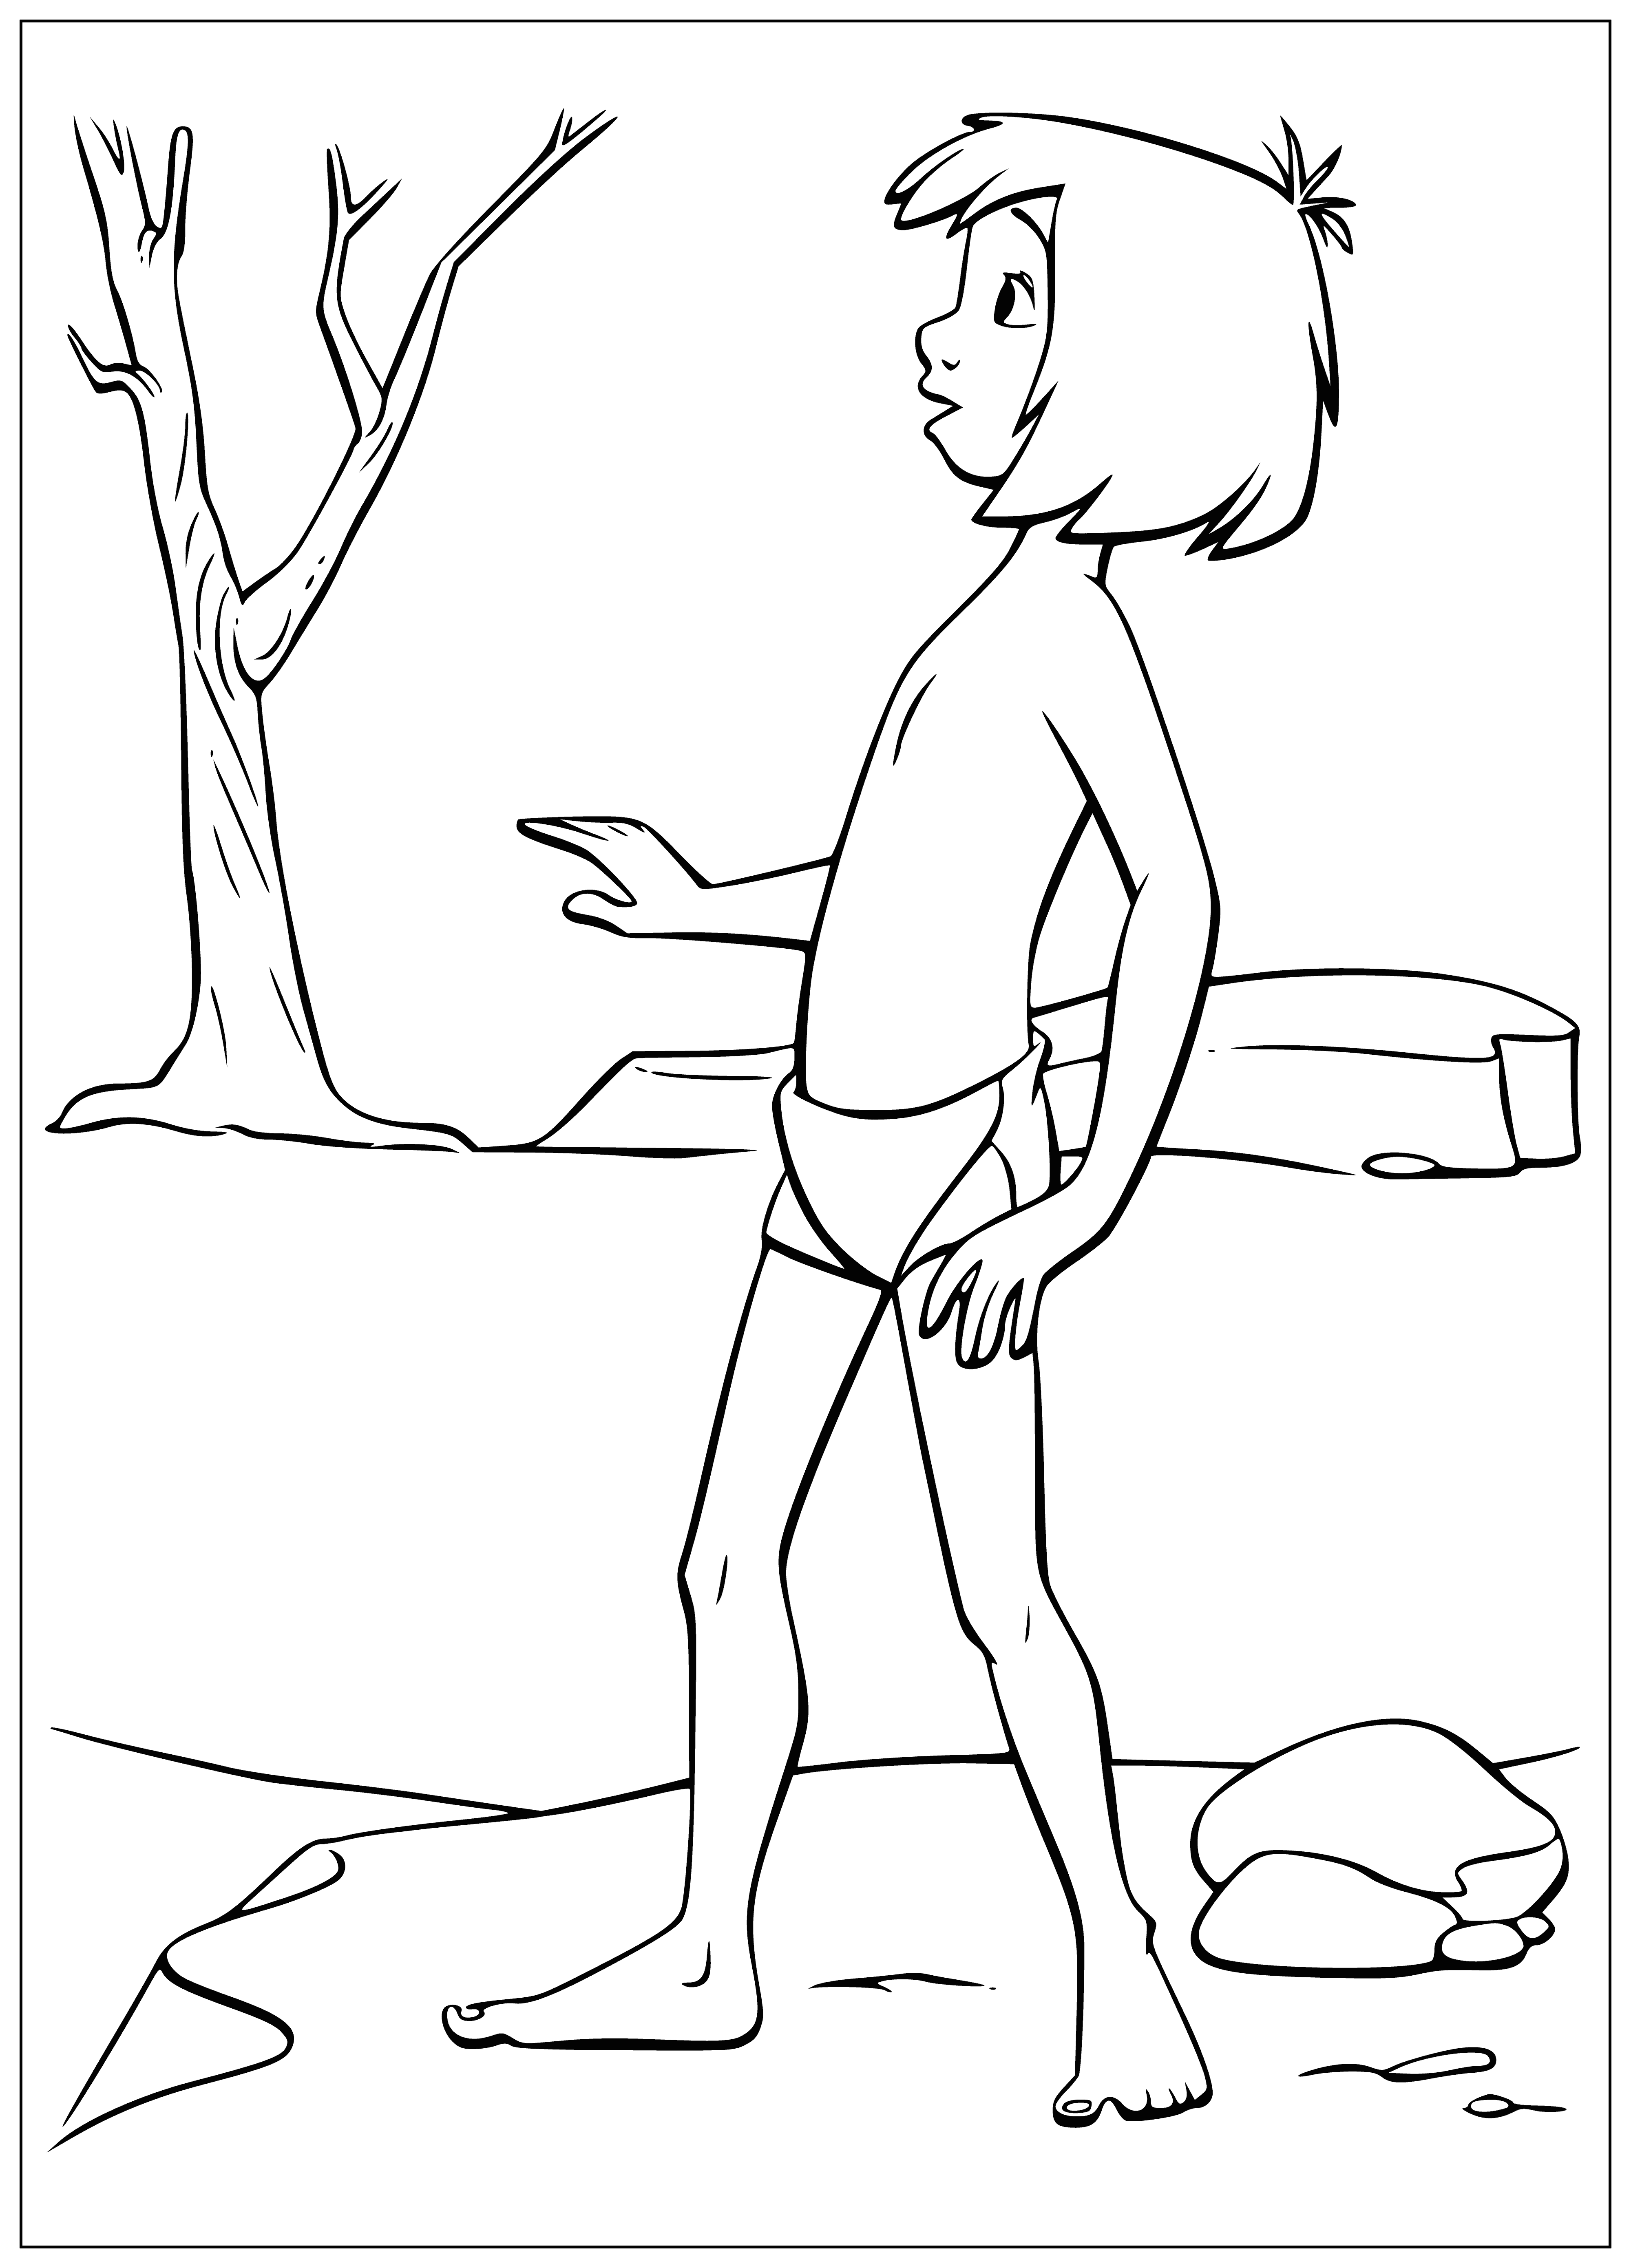 coloring page: Boy Mowgli, small & weak, wears a loincloth & has monkey & bird. Big eyes & head, knife in belt; standing before a tree. #JMBarrie